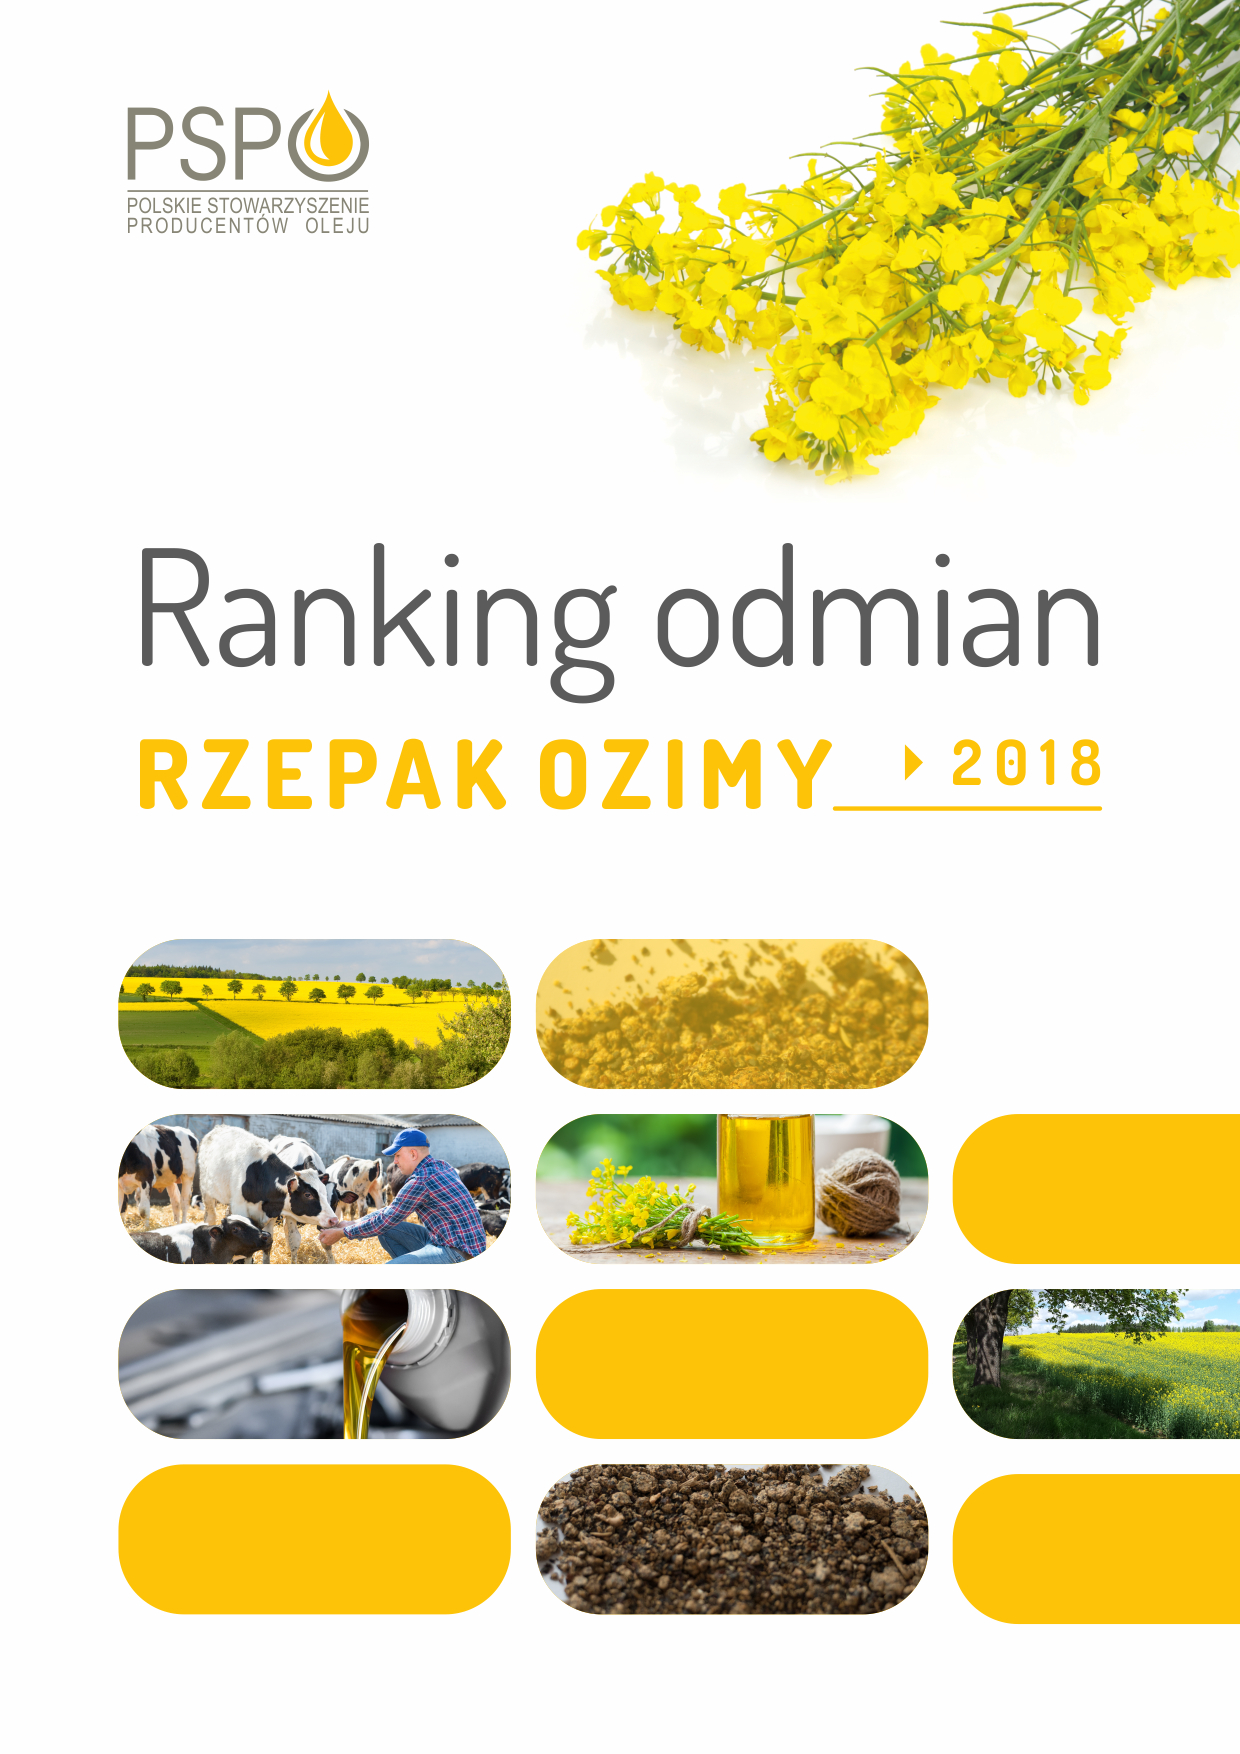 Ranking Odmian Rzepaku 2018